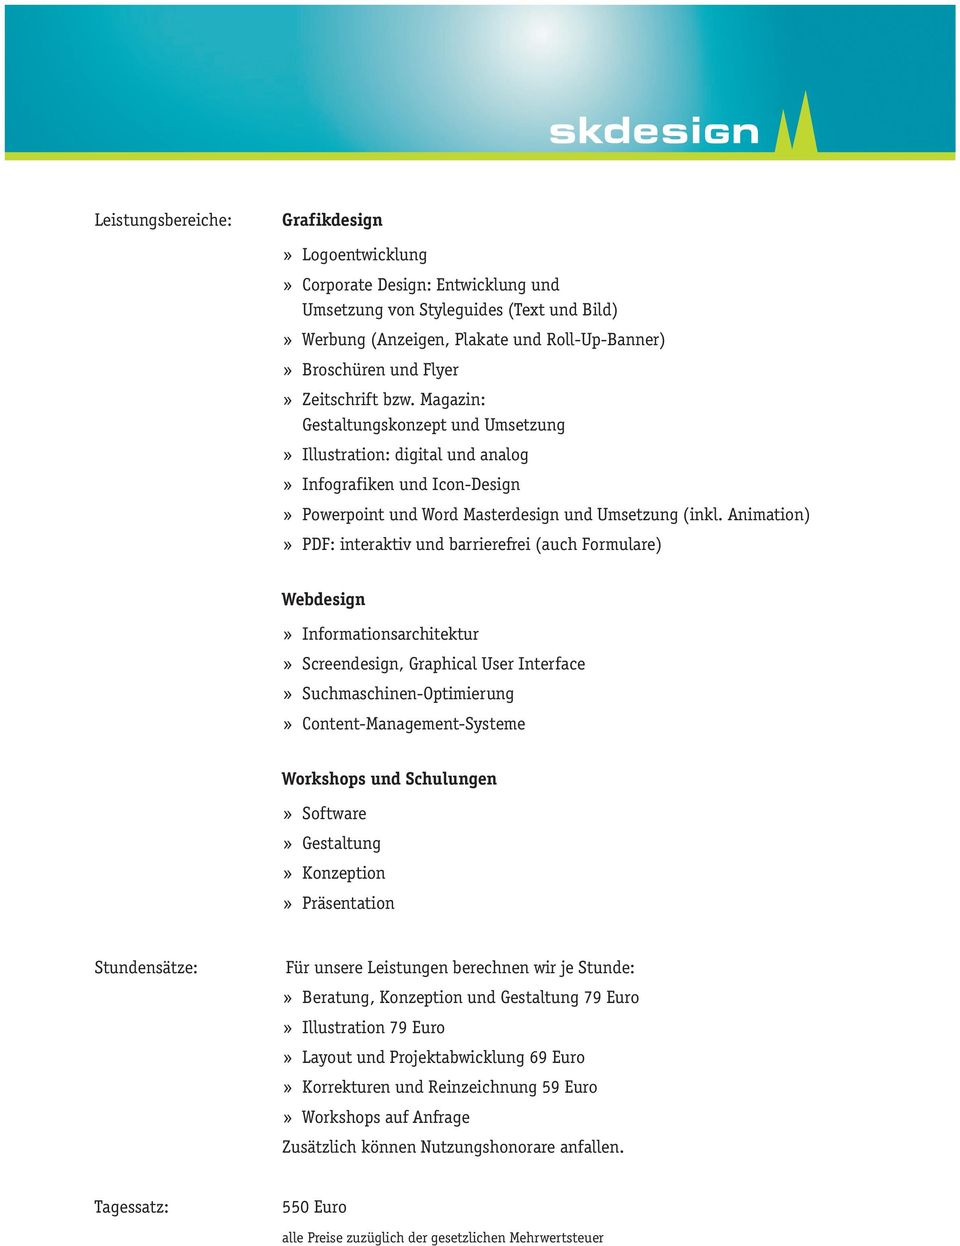 Animation) PDF: interaktiv und barrierefrei (auch Formulare) Webdesign Informationsarchitektur Screendesign, Graphical User Interface Suchmaschinen-Optimierung Content-Management-Systeme Workshops